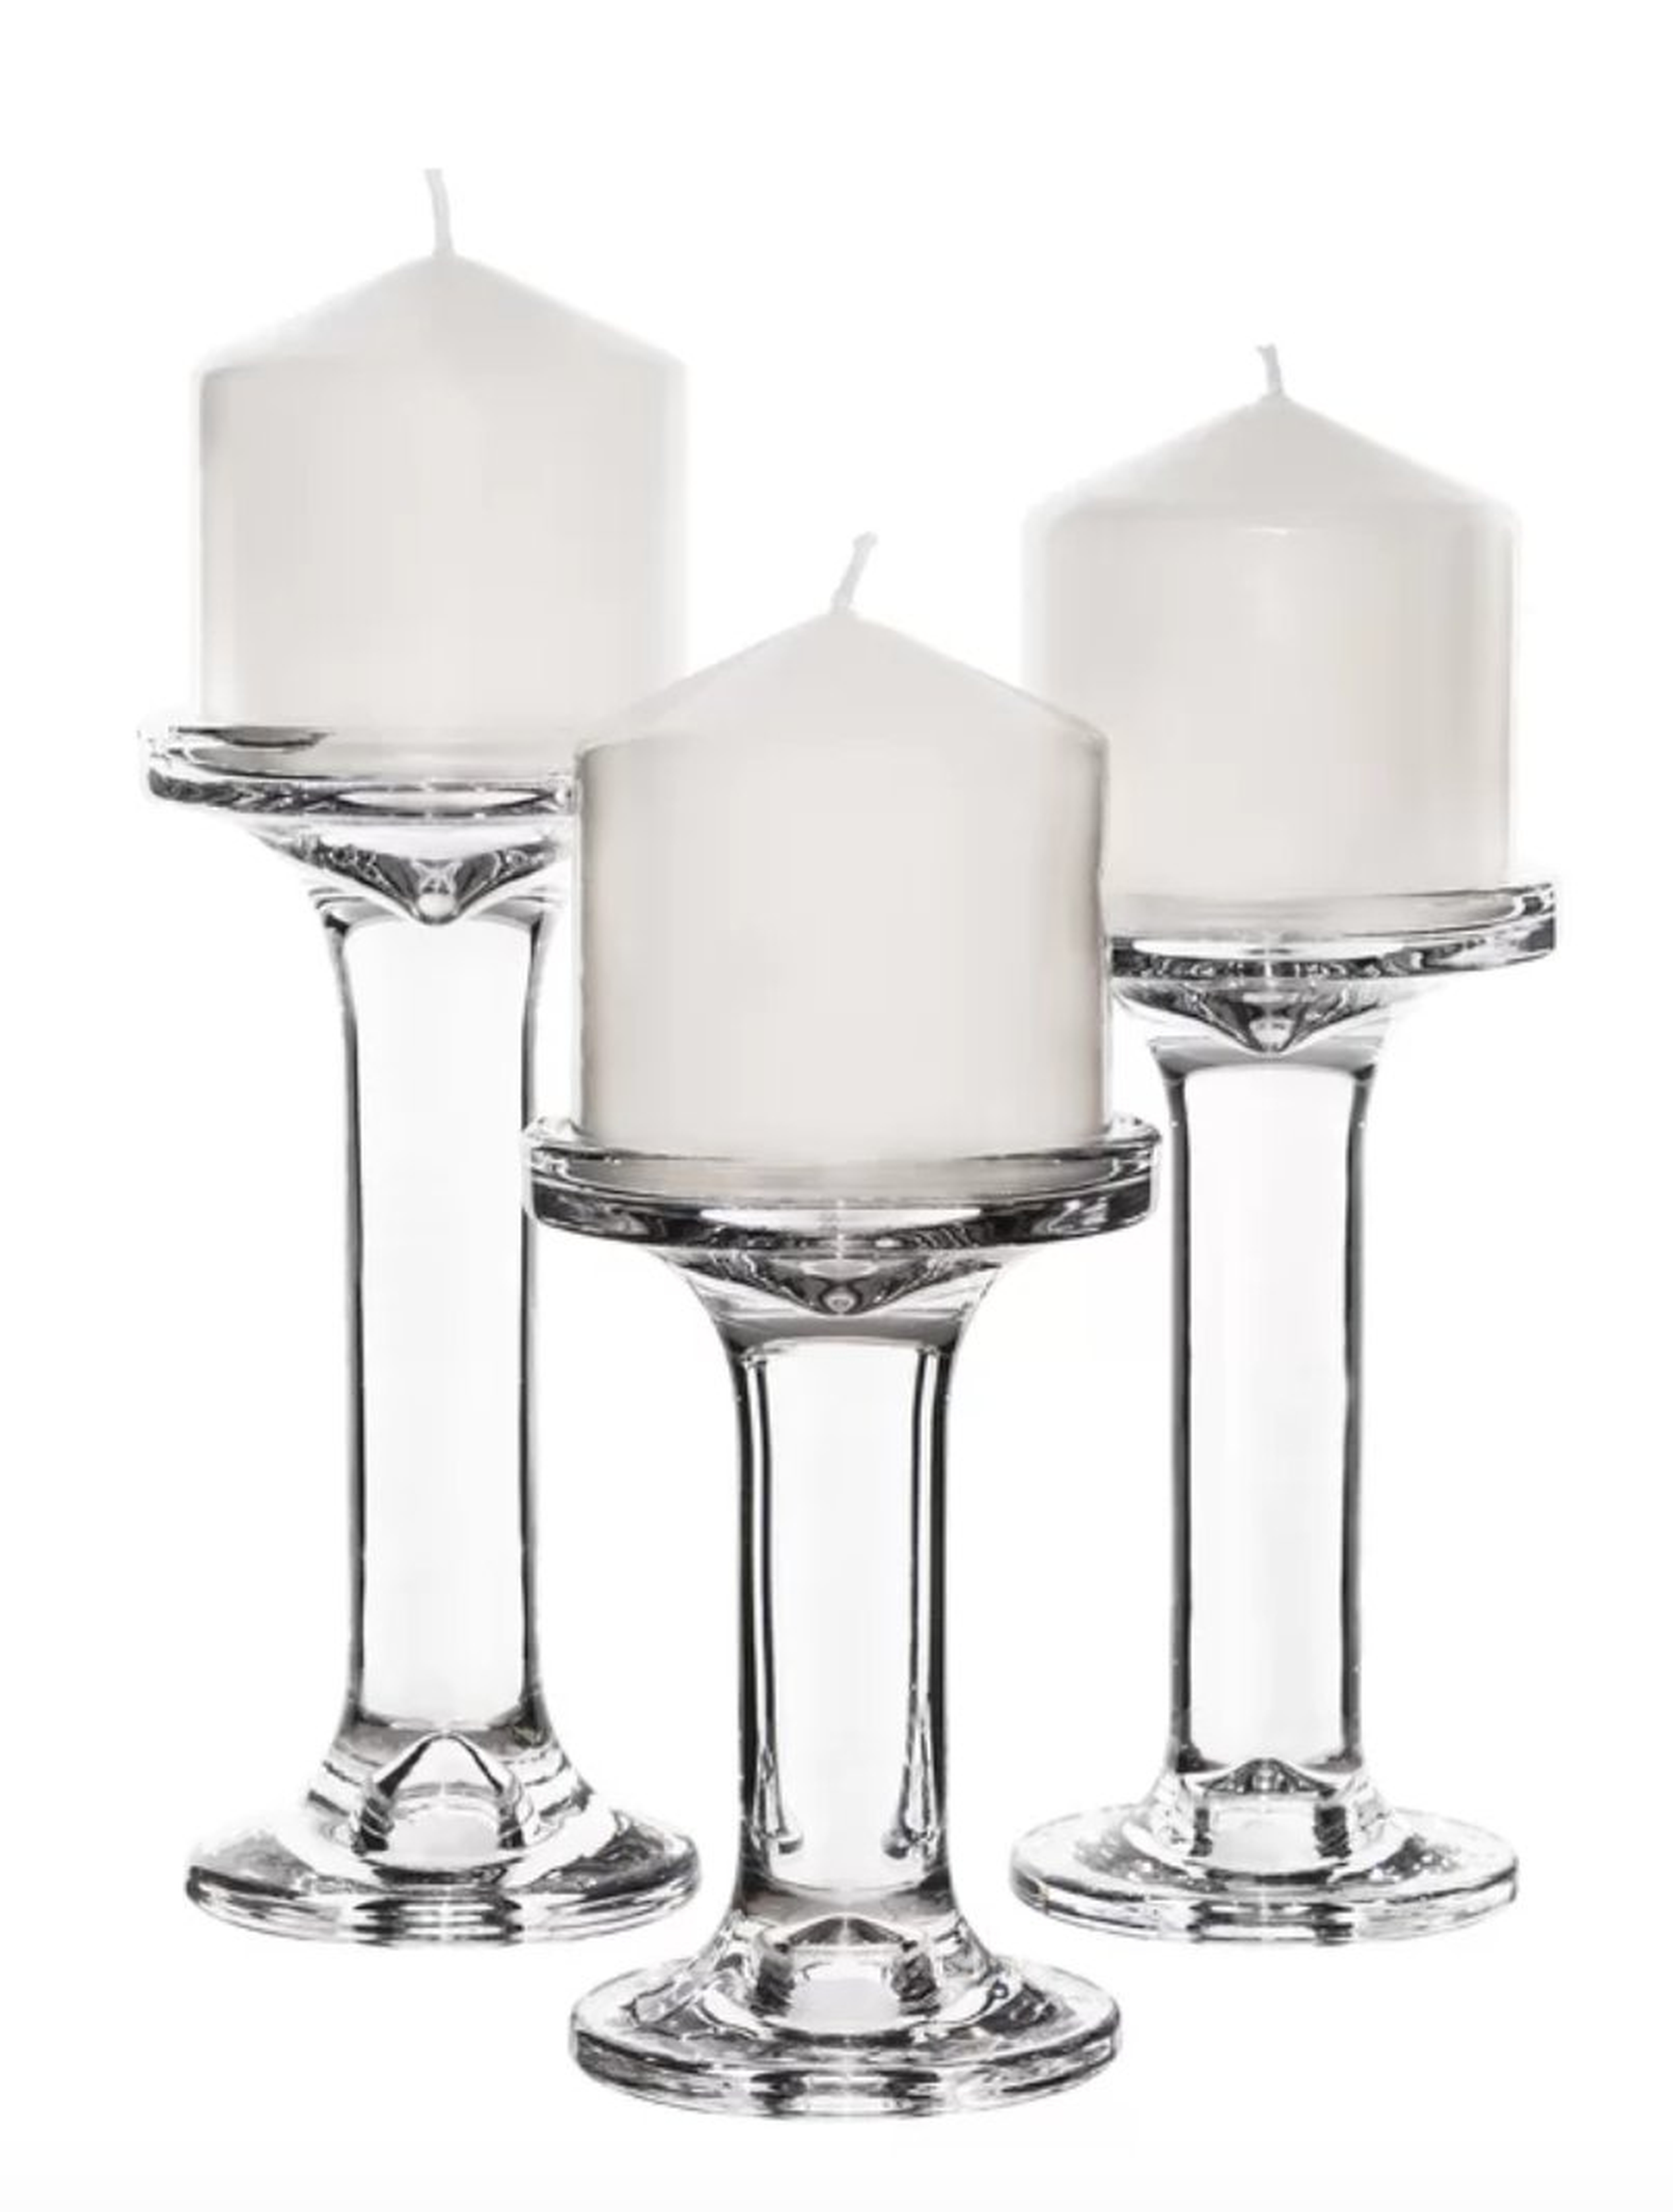 3 Piece Glass Candlestick Set - Wayfair